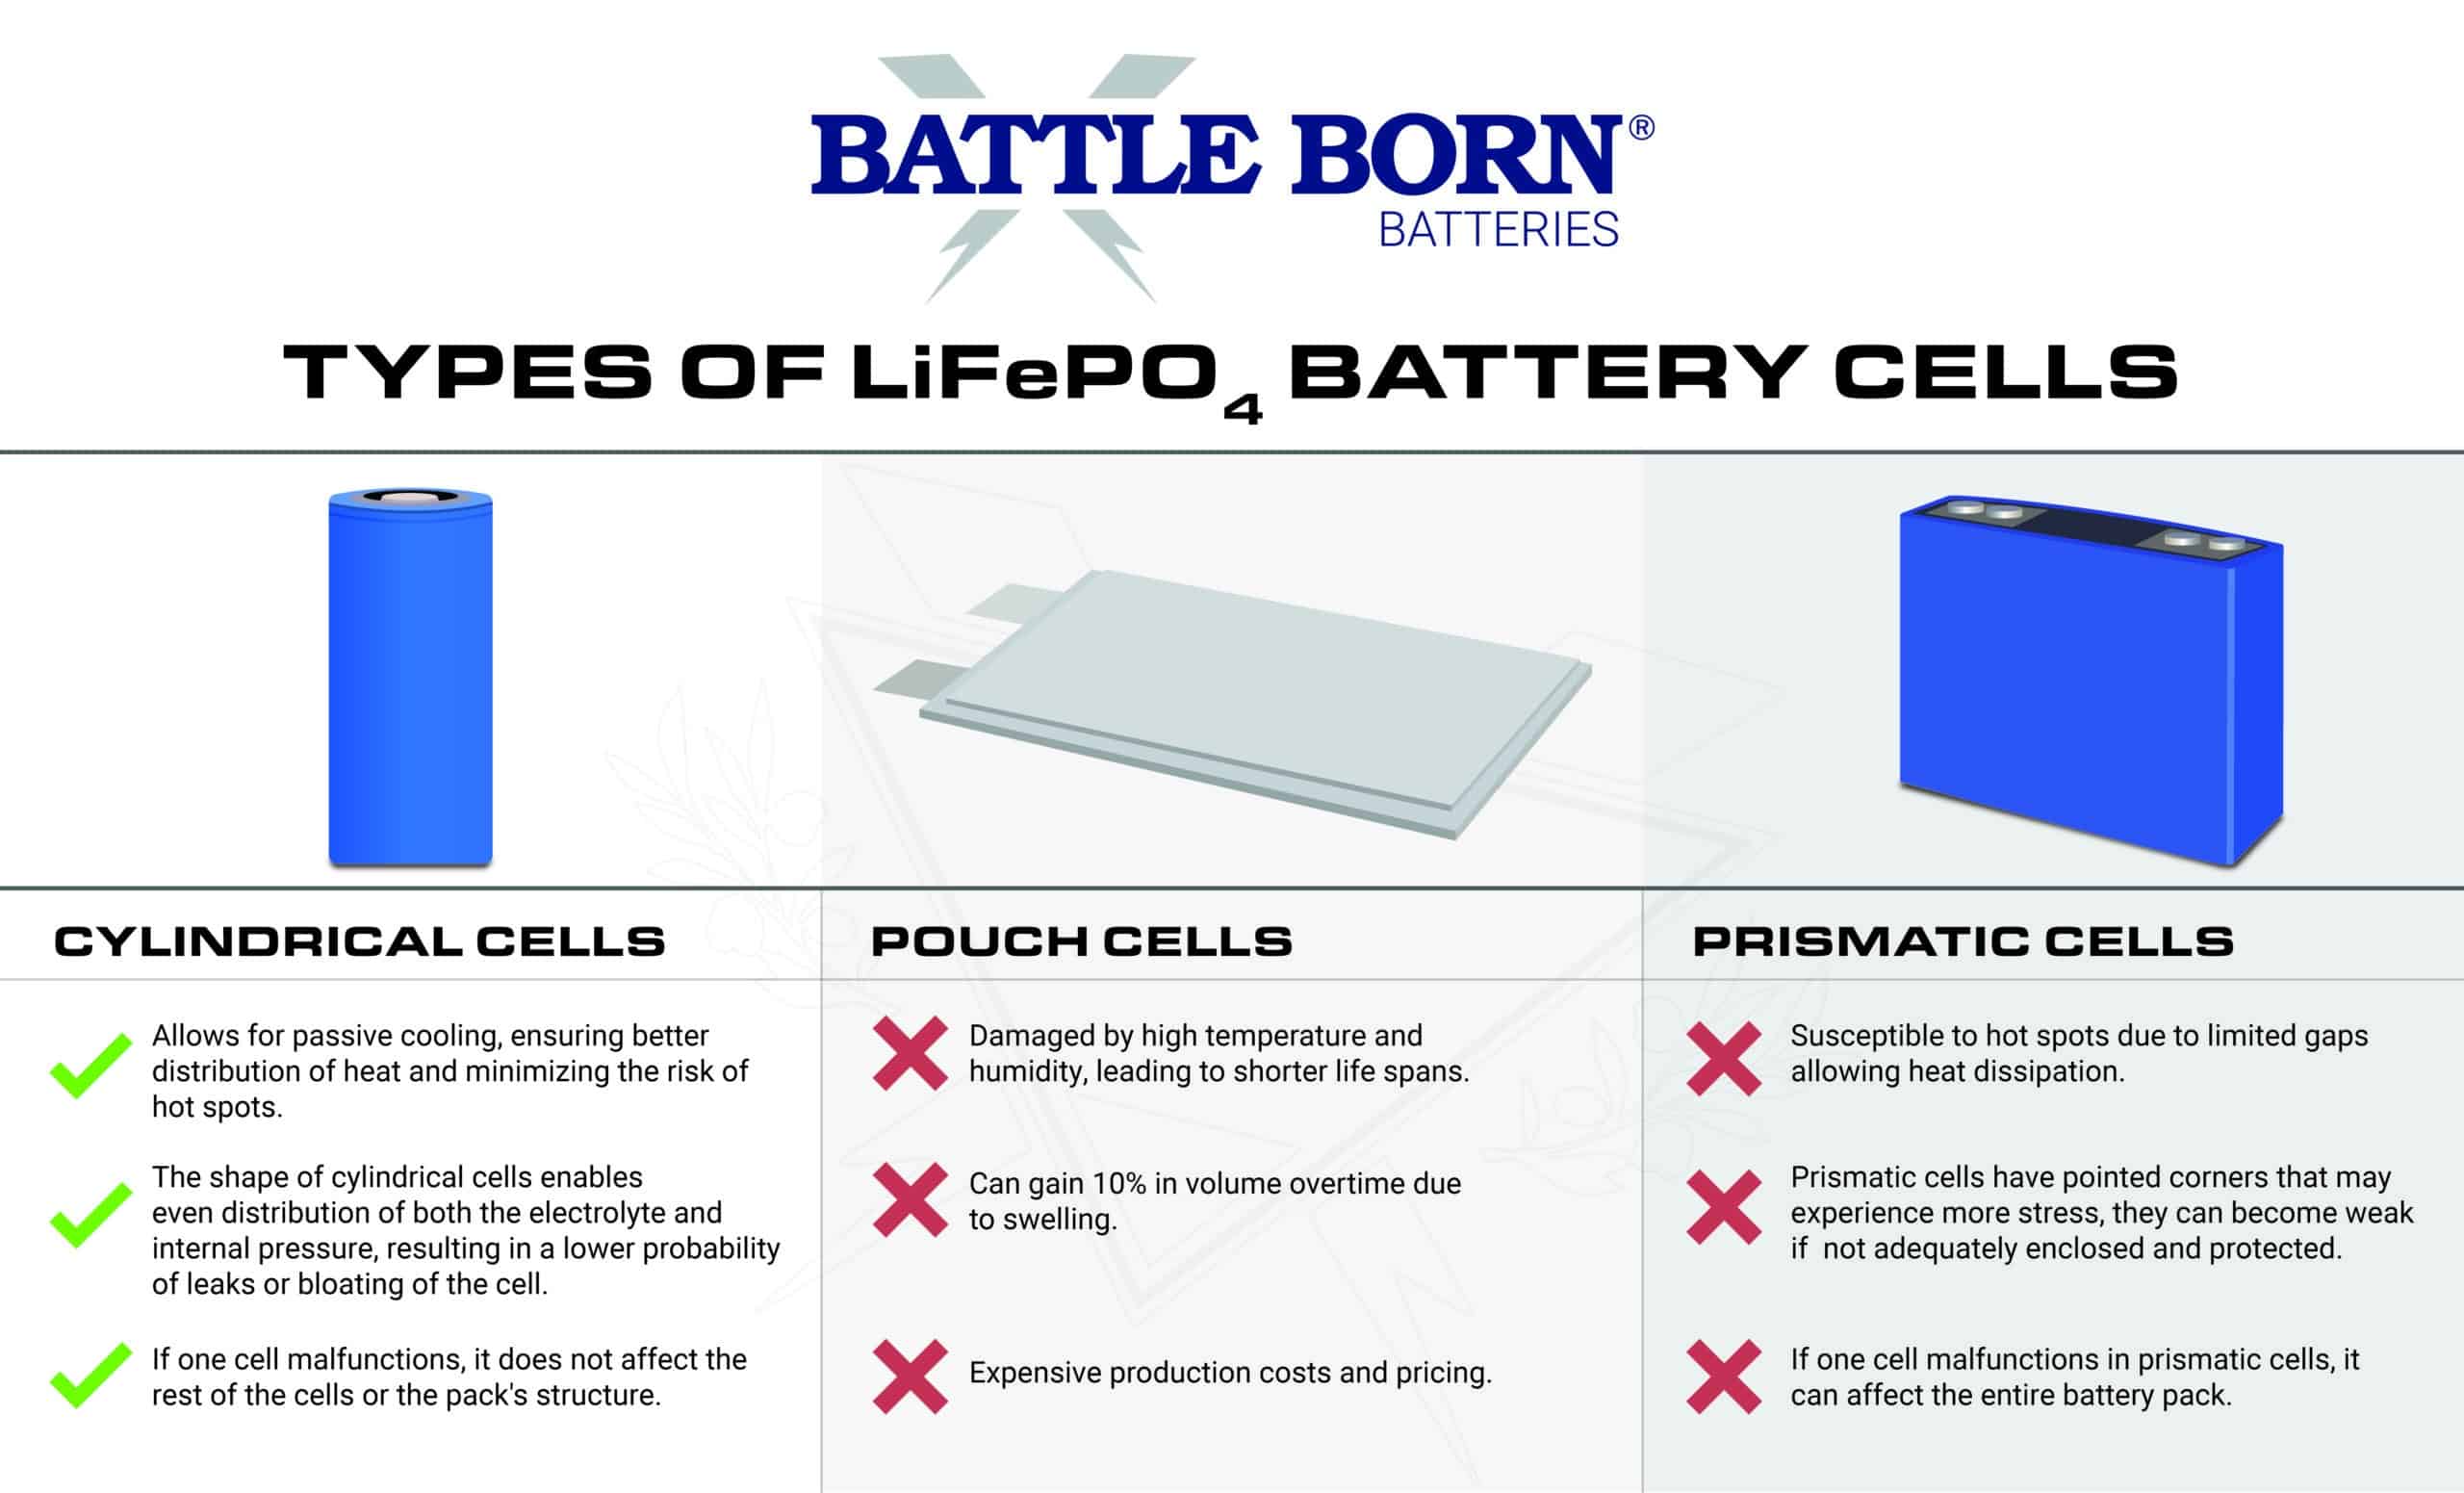 Battle Born Batteries cell comparison infographic